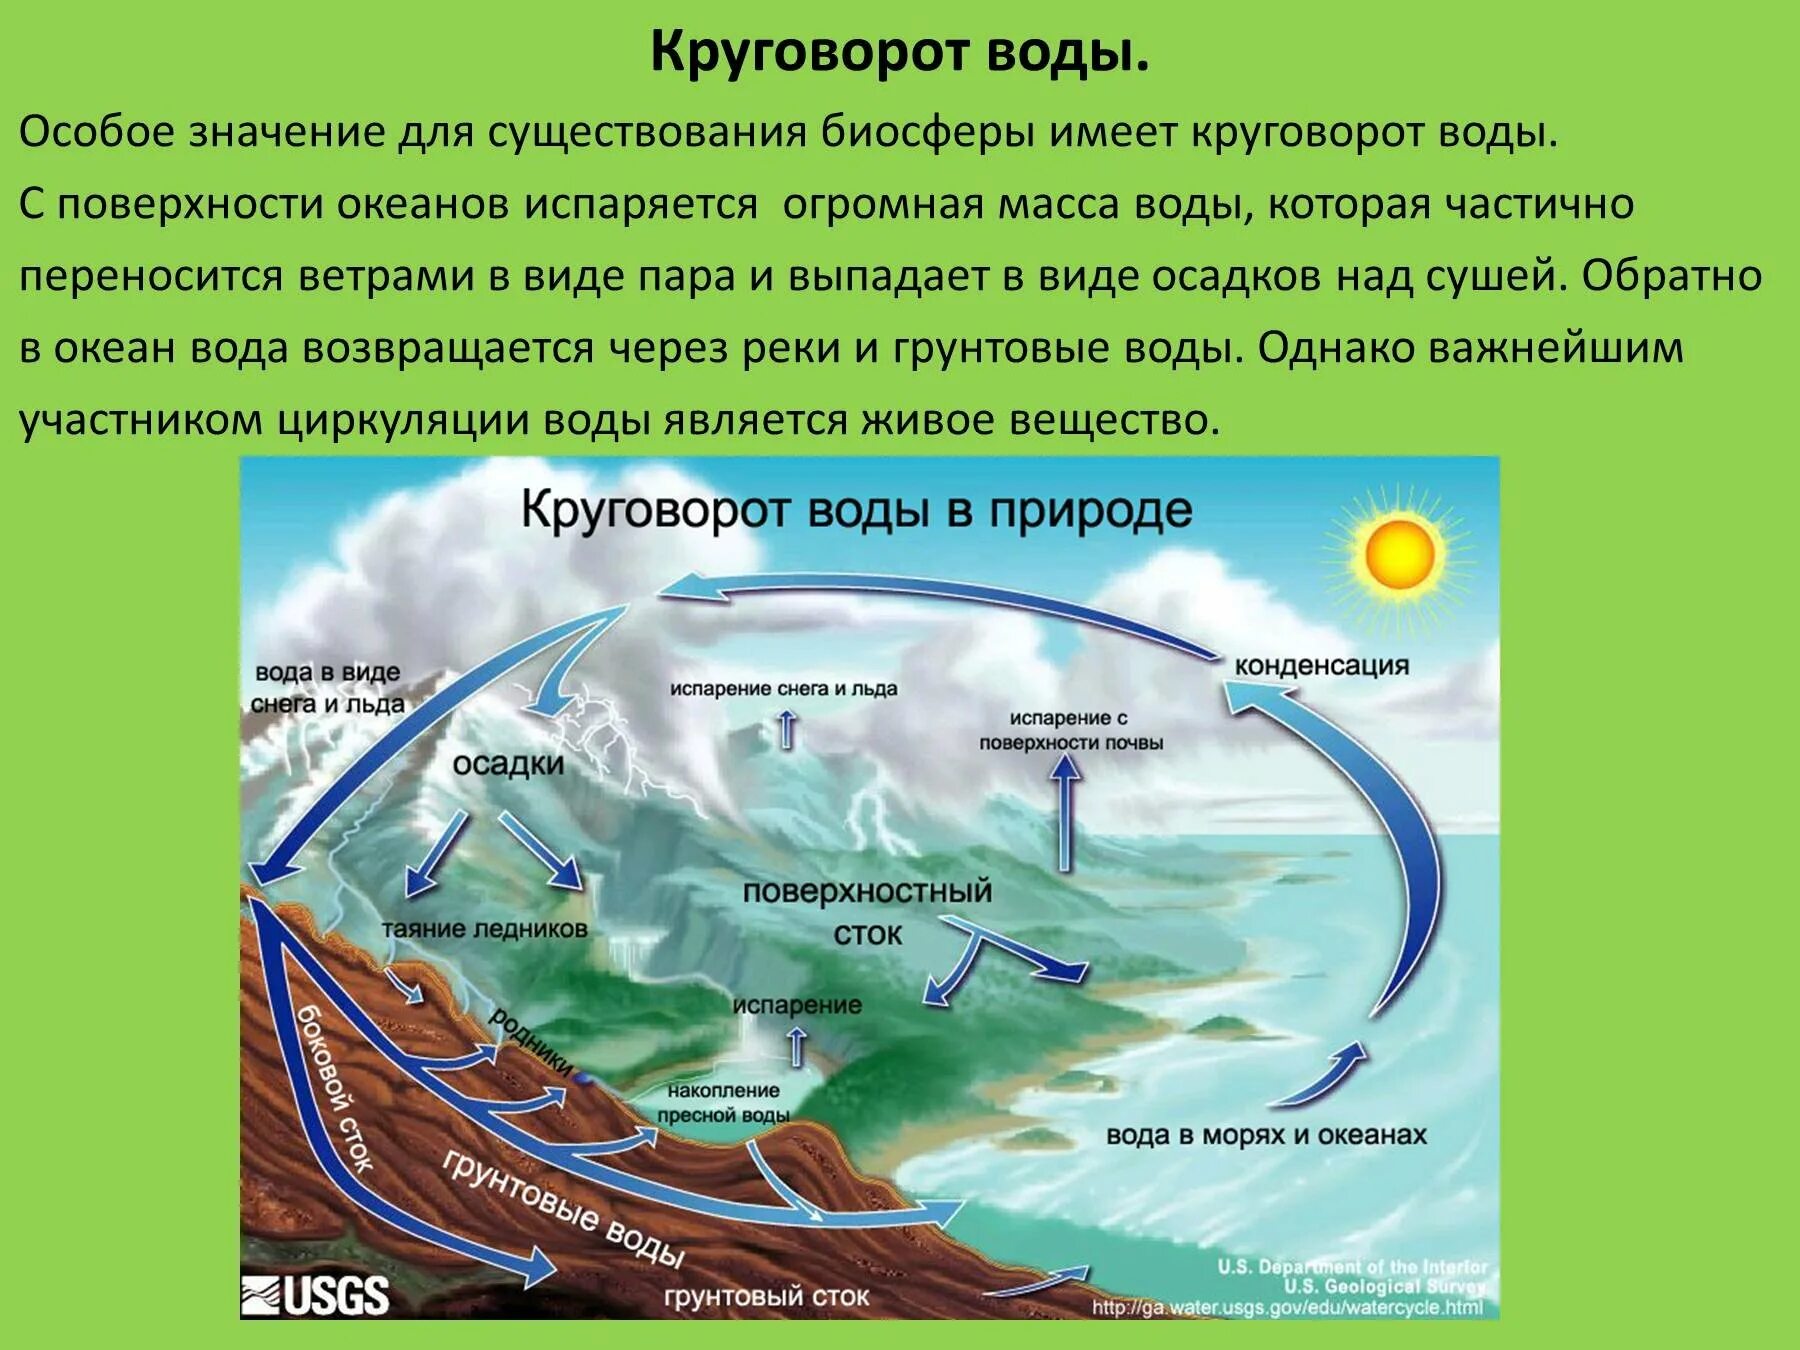 Мировой круговорот в природе 6 класс. Биосфера круговорот воды в биосфере. Гидрологический цикл круговорота воды. Круговорот воды в биосфере 6 класс география.